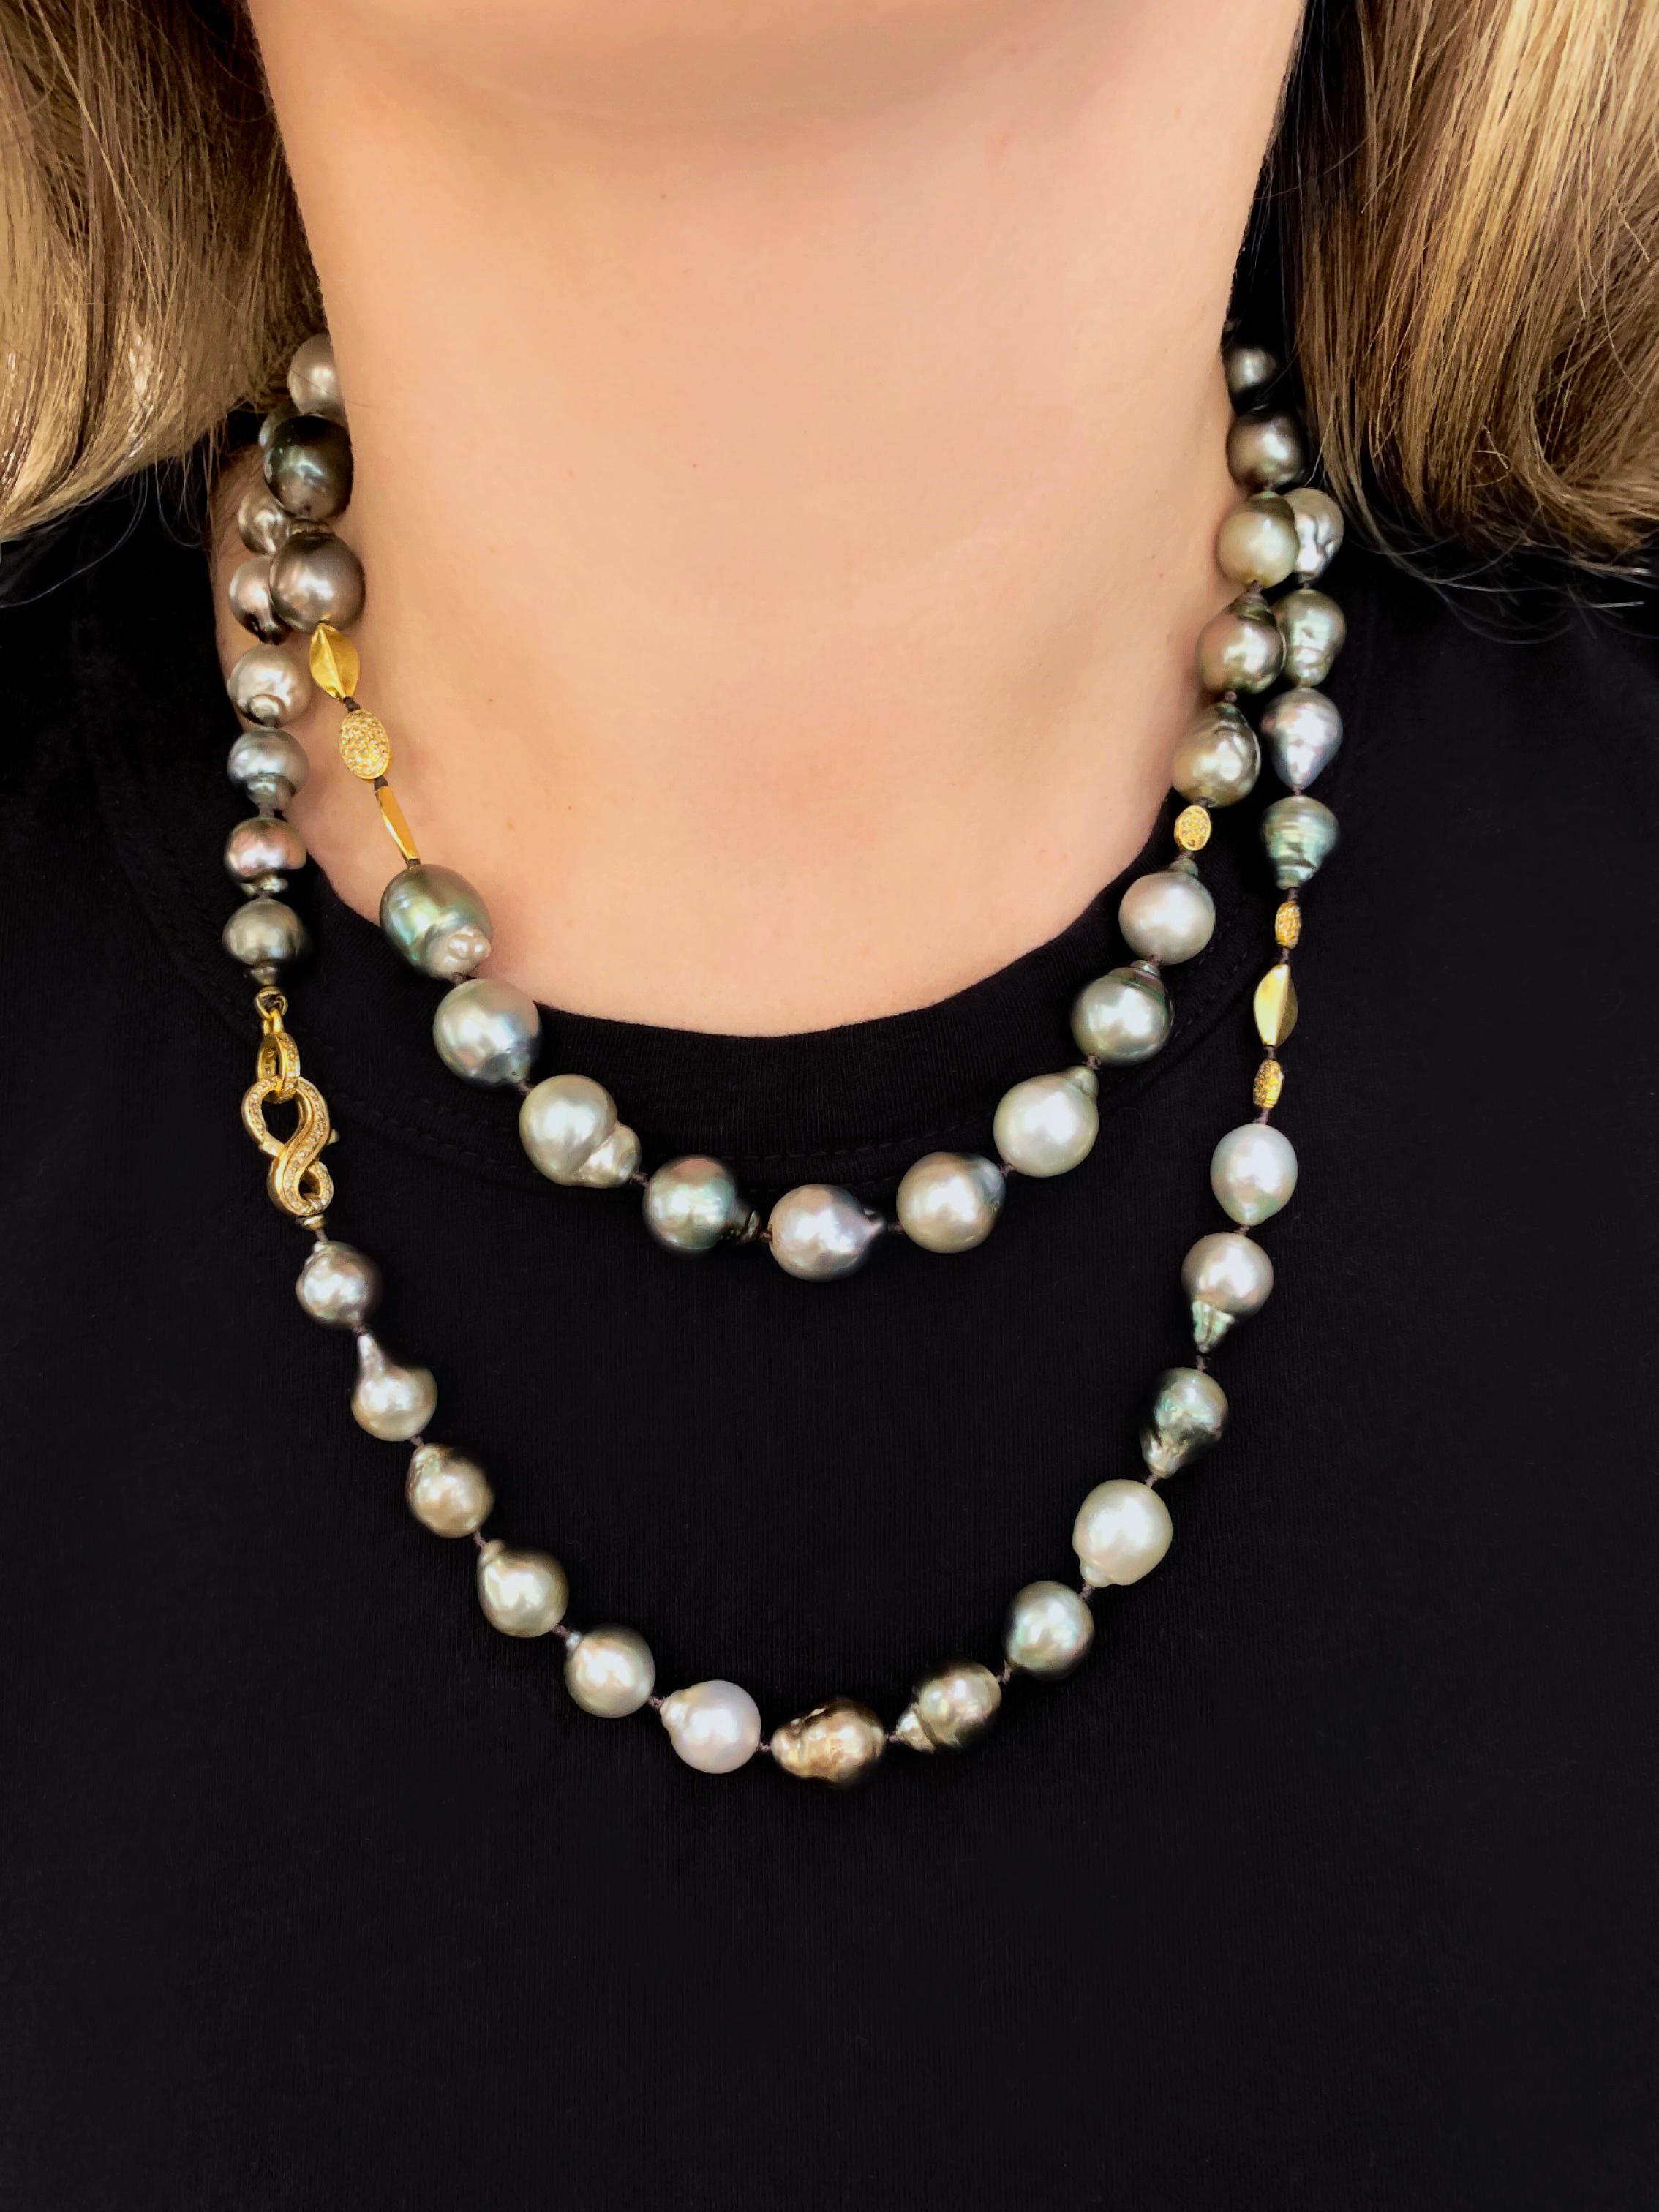 Long collier de perles baroques de Tahiti fait à la main par la créatrice de bijoux Julie Romanenko (Just Jules), composé d'un assortiment de magnifiques perles baroques de Tahiti de couleur argentée avec une iridescence magnifique, ornées de